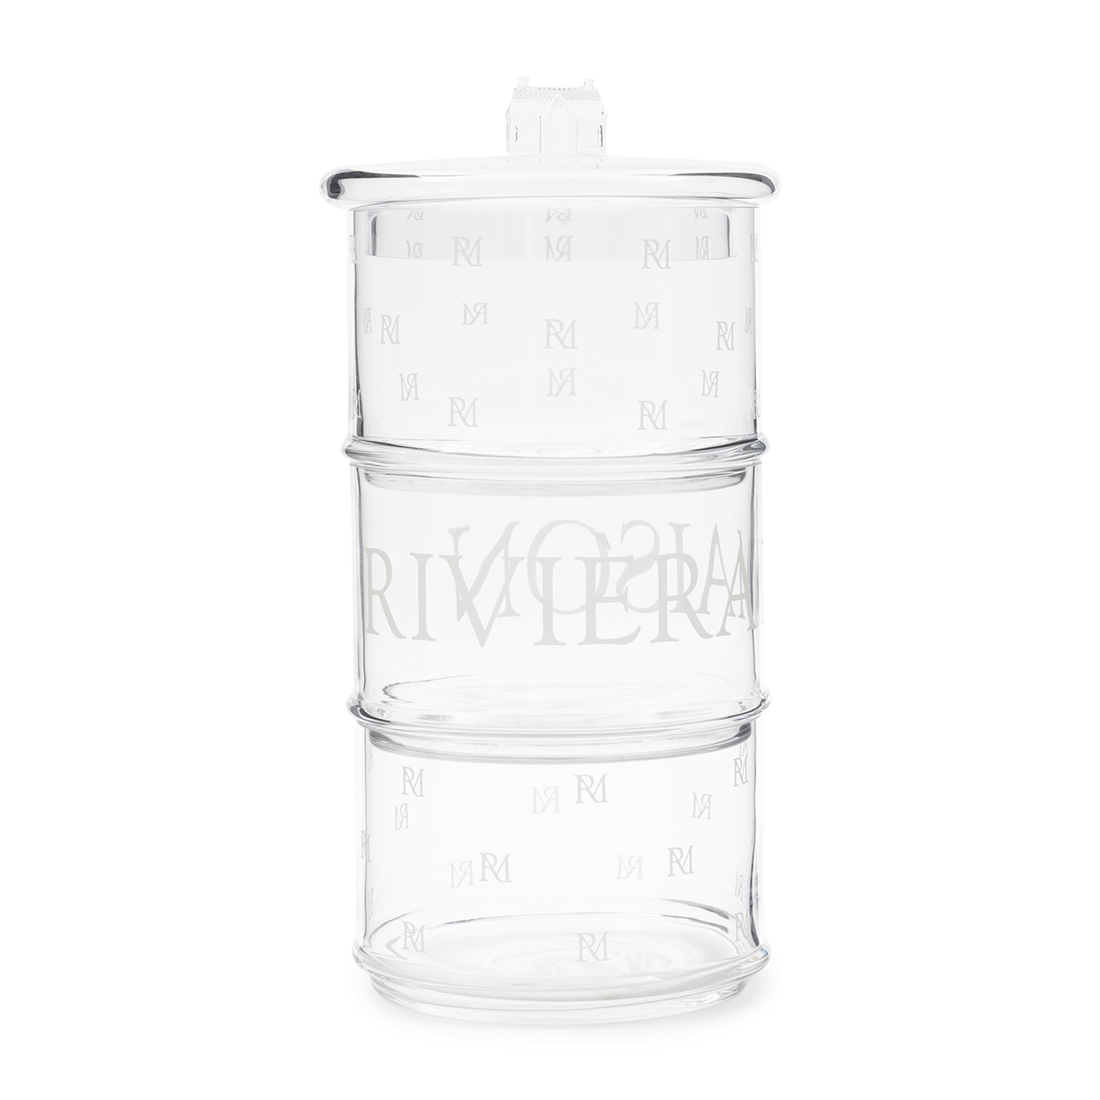 Riviera Maison Voorraadpot, glazen opbergpot met deksel - RM Monogram, 3 opbergvakken 3 Lagen